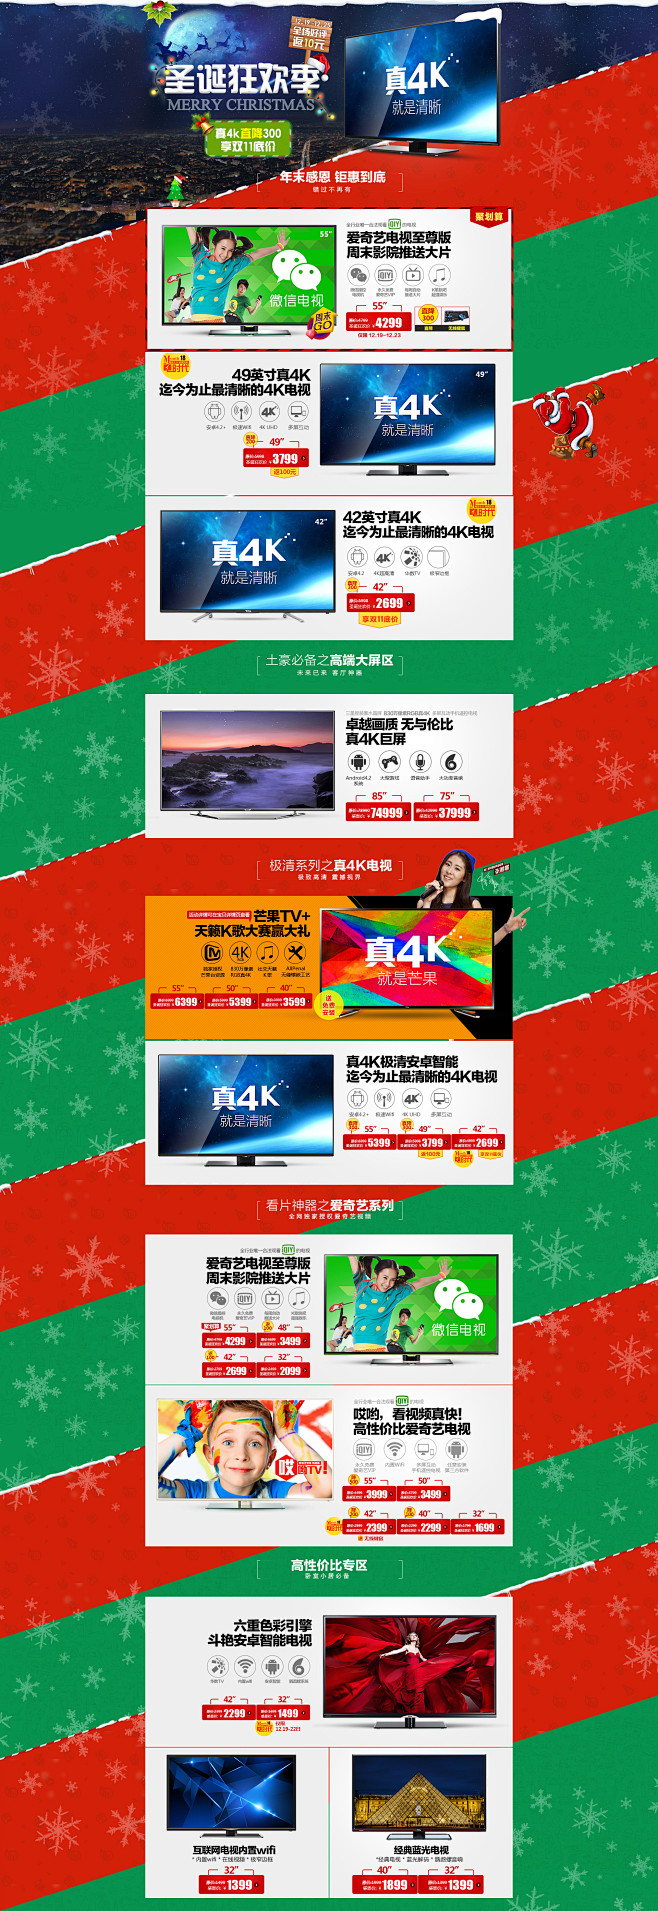 TCL官方旗舰店 圣诞节狂欢季 聚划算品...